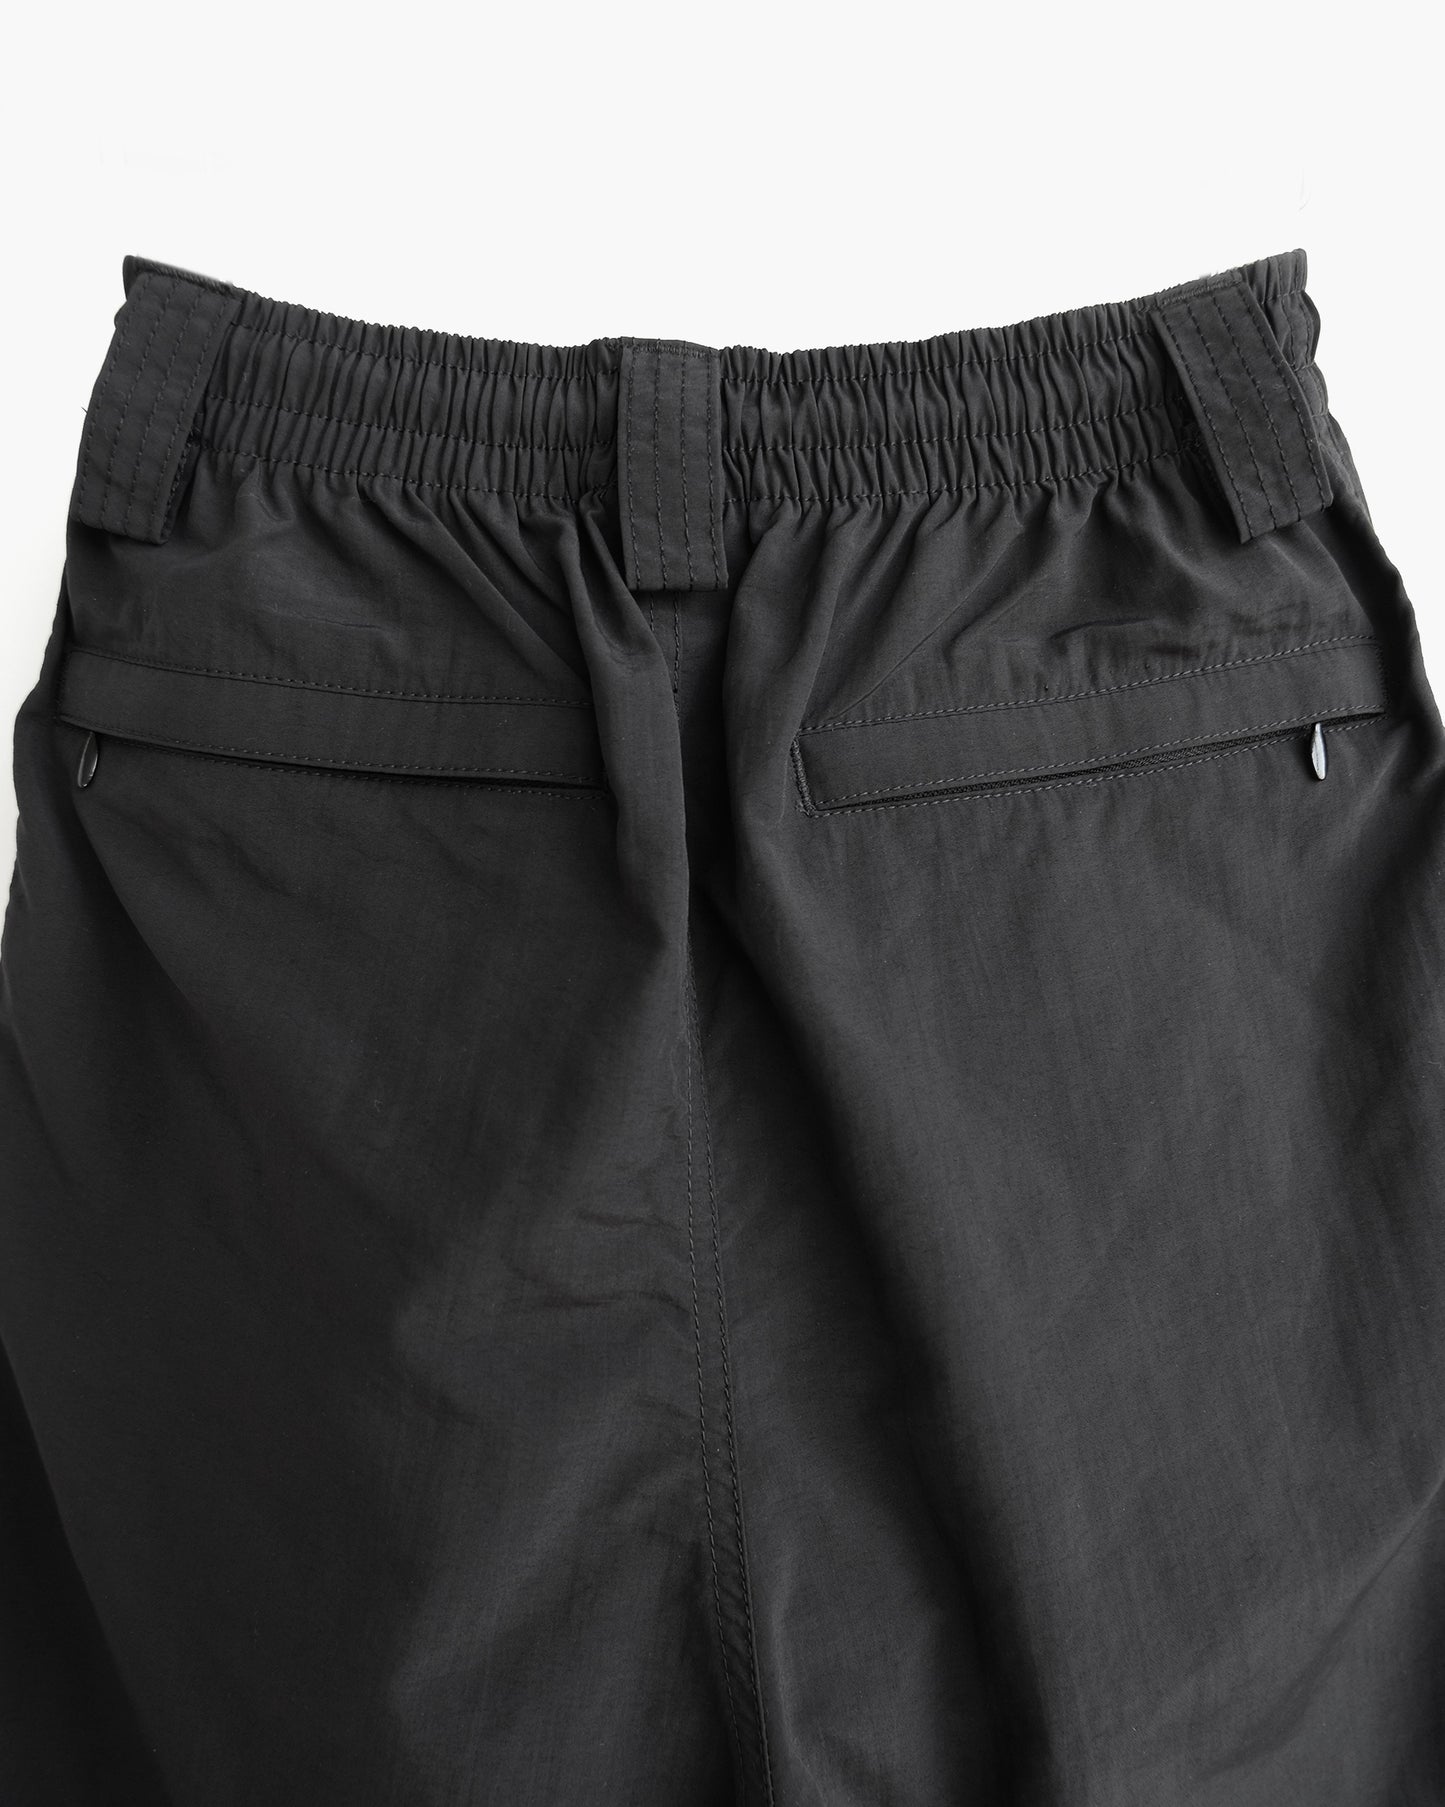 Black Nylon Shorts